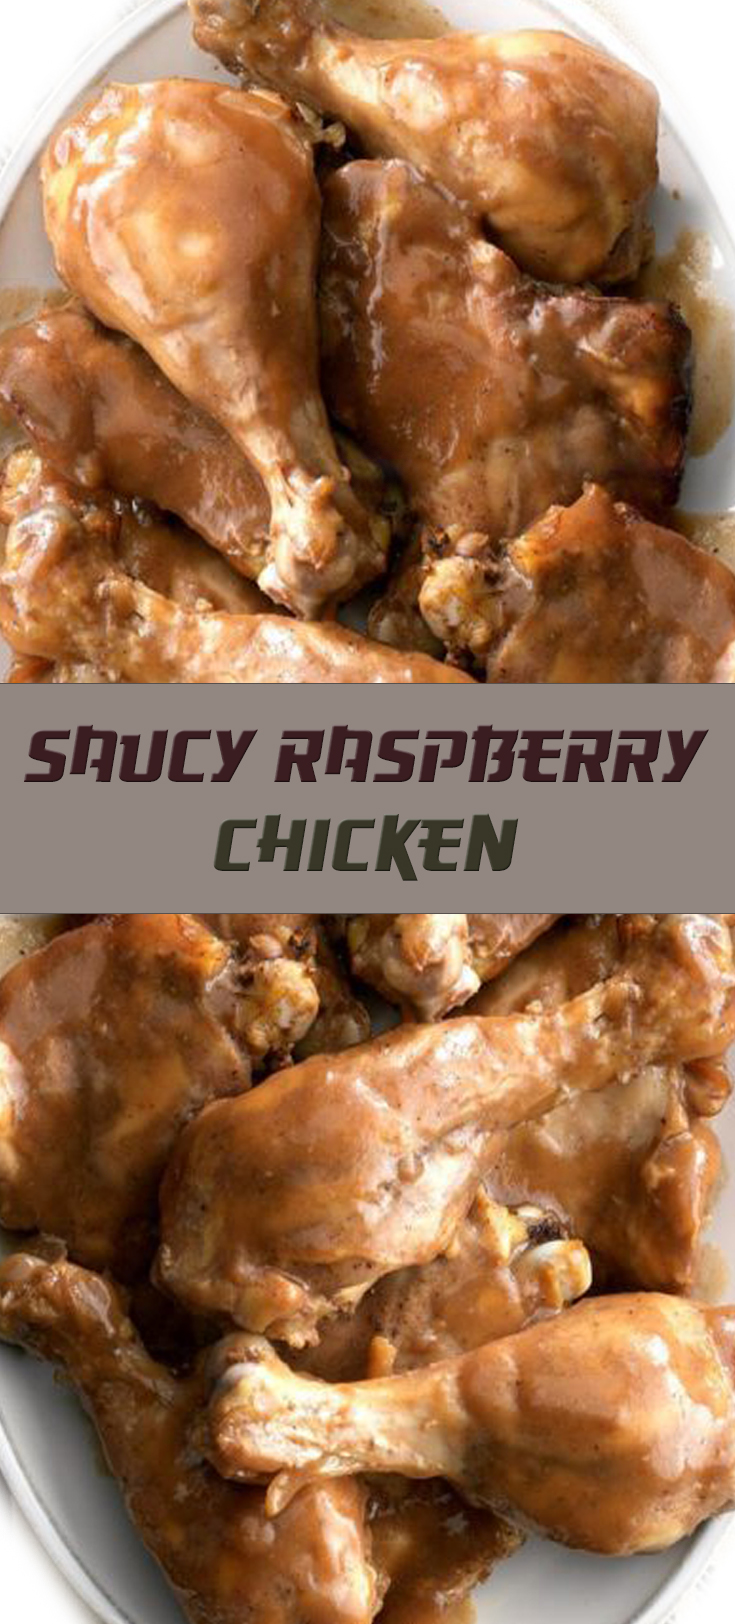 Saucy Raspberry Chicken